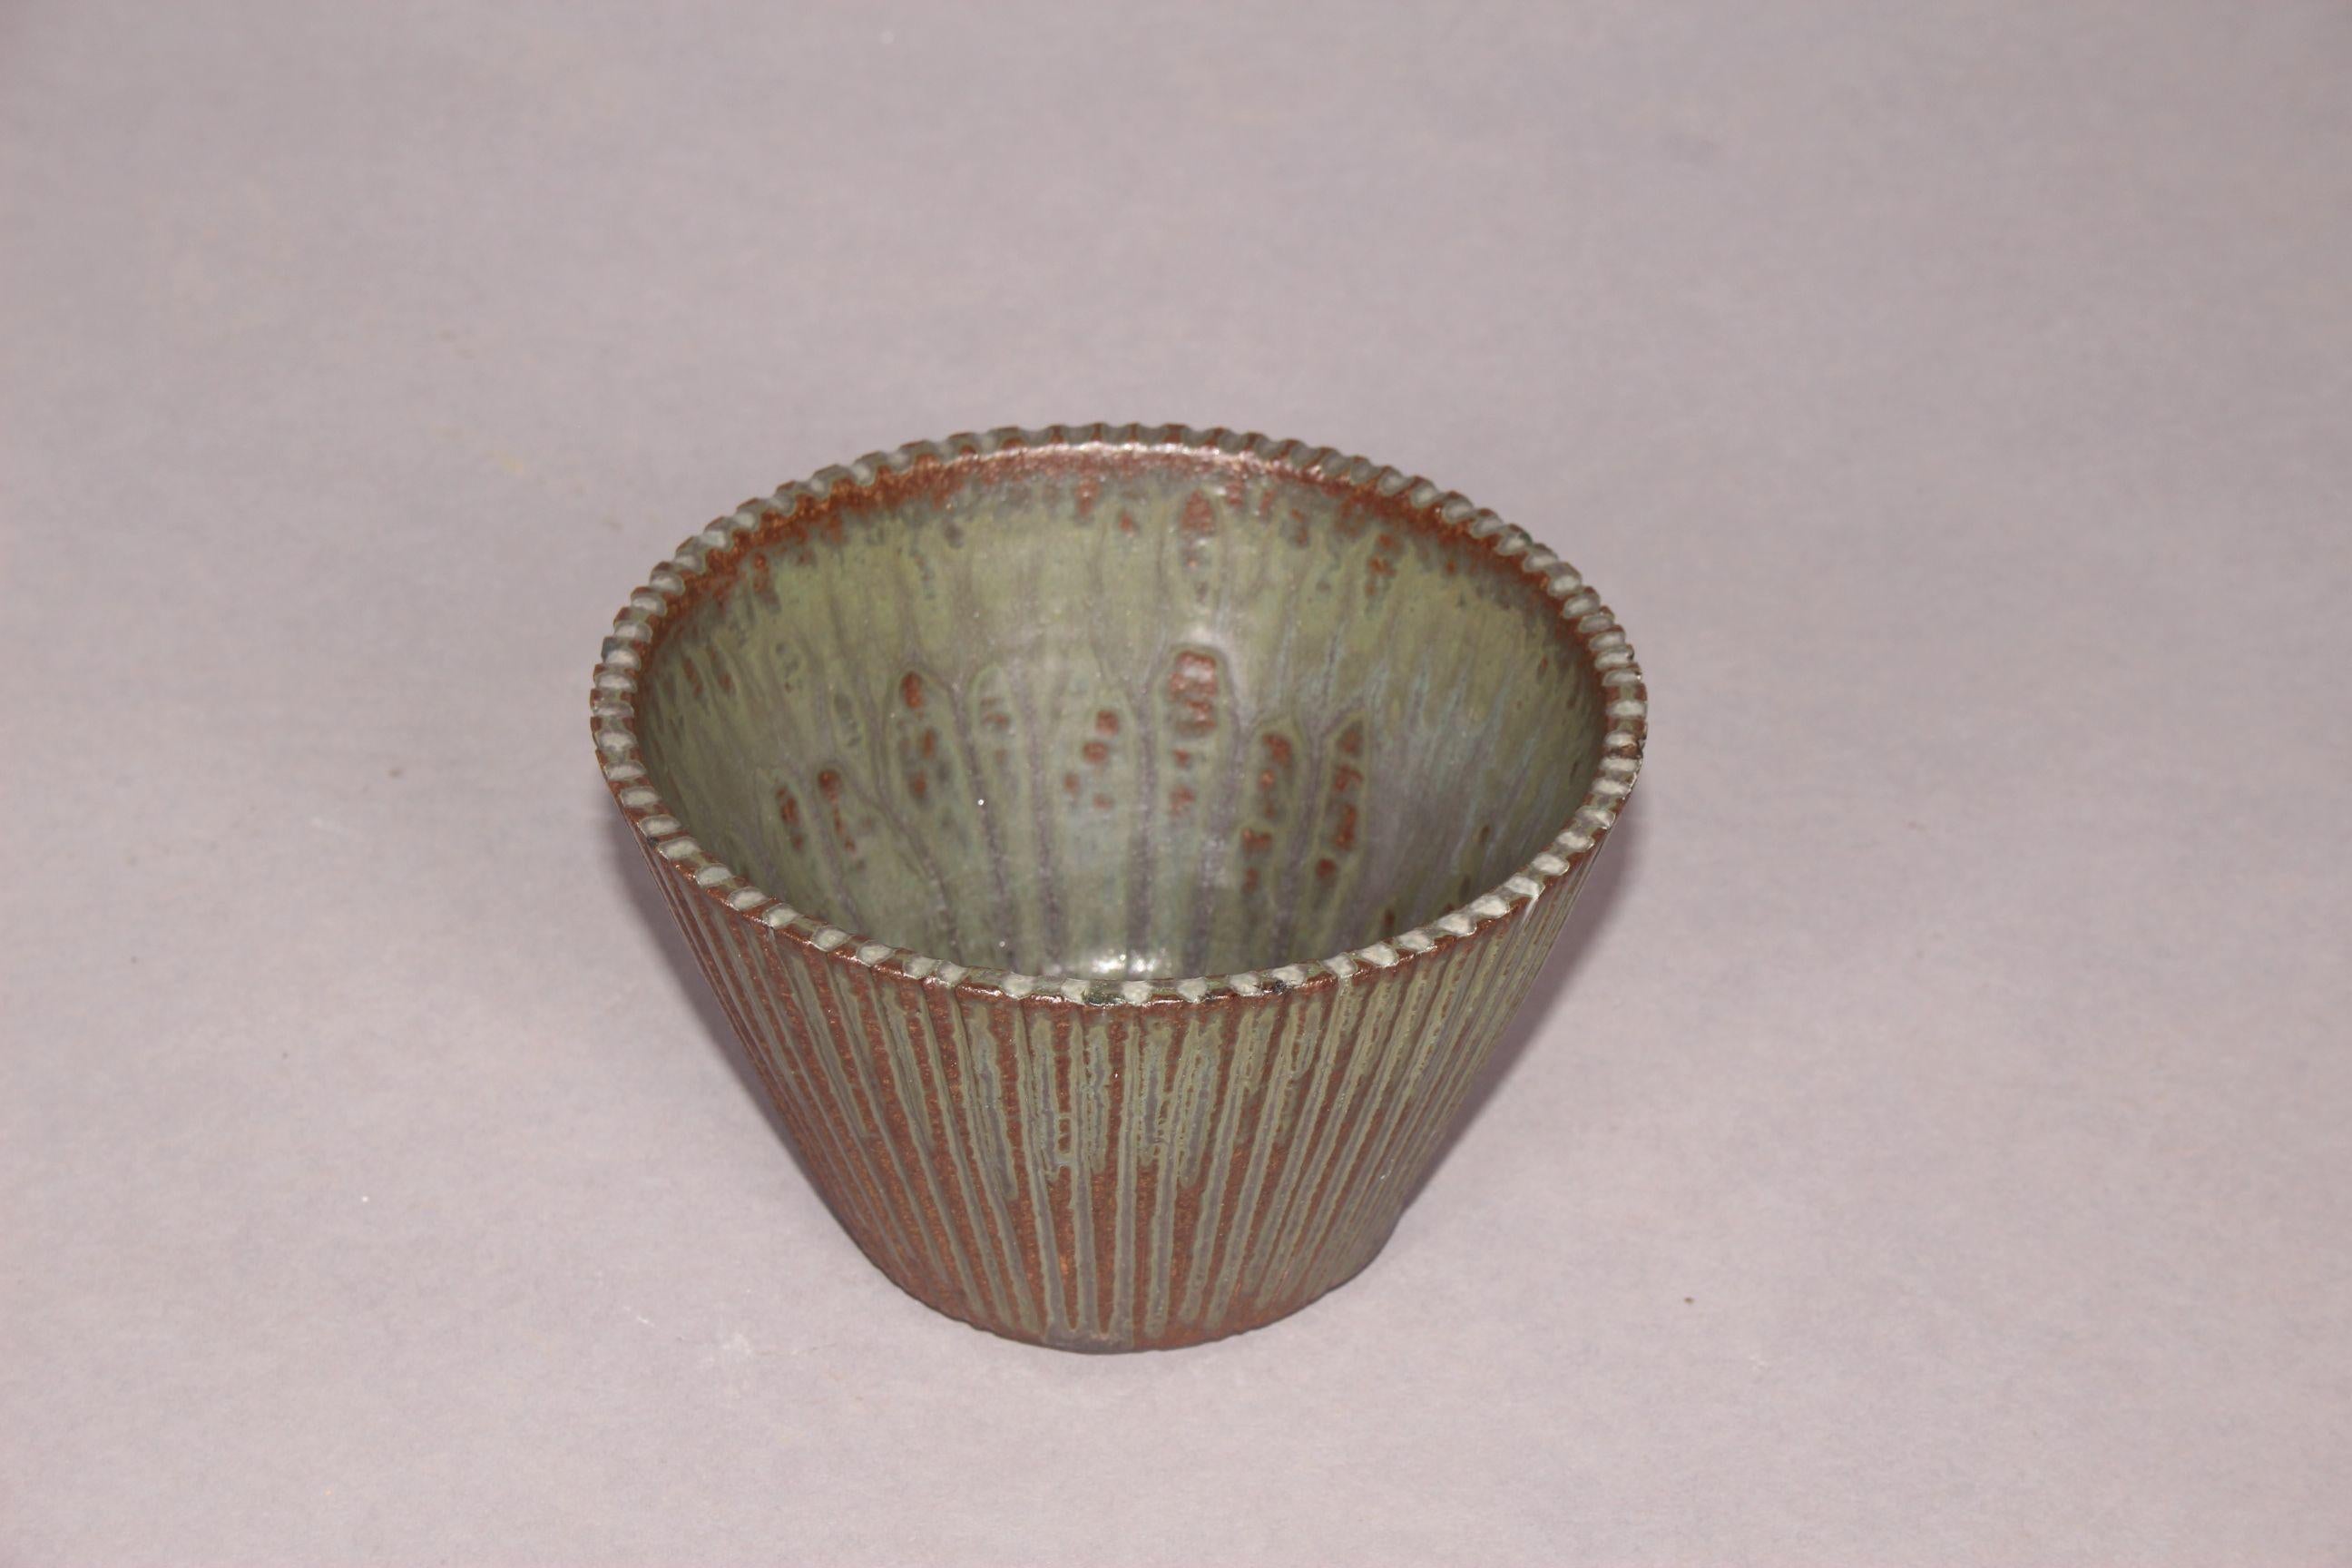 Arne Bang ceramic bowl.